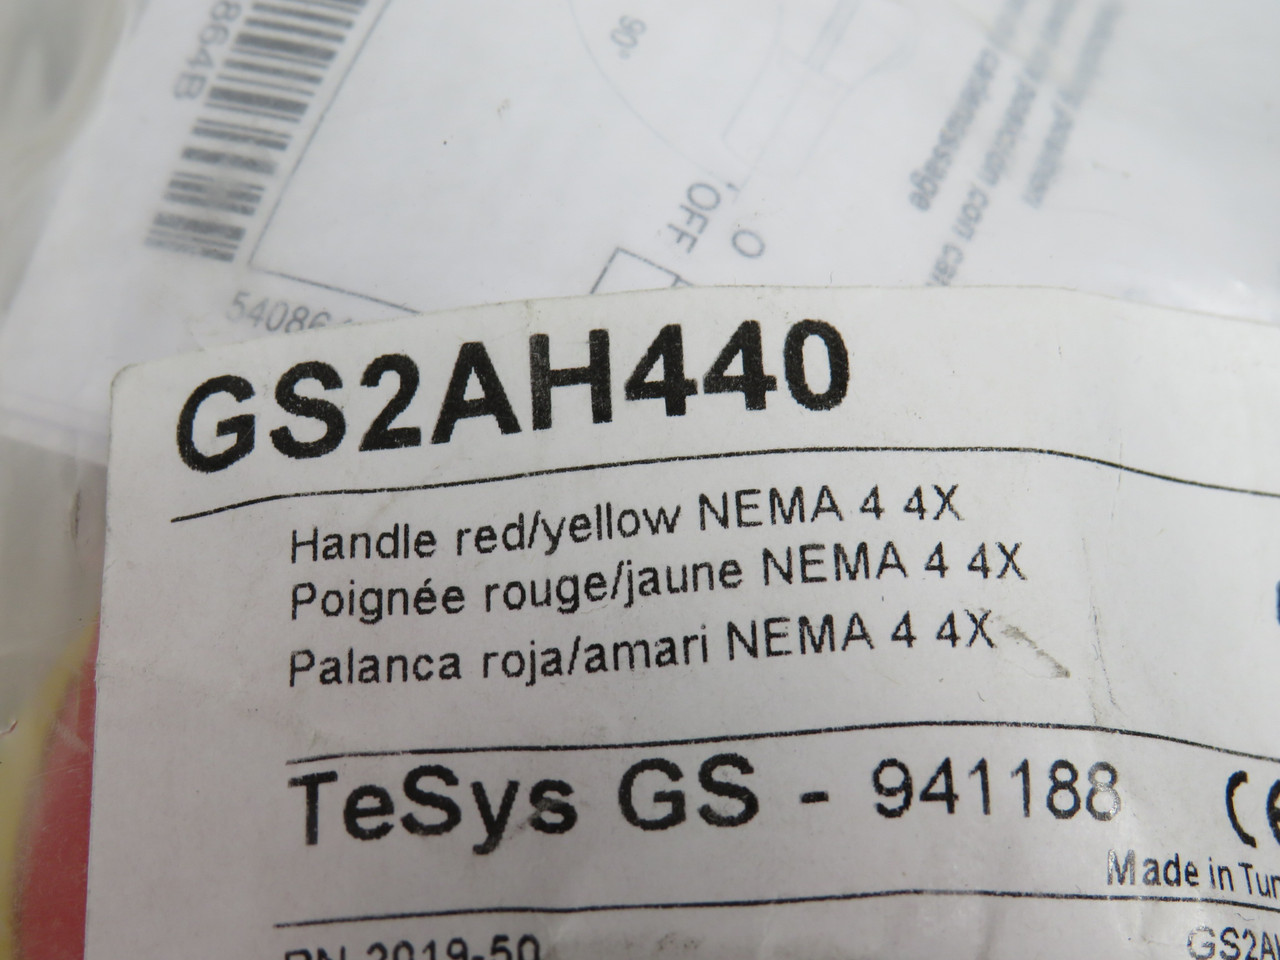 Schneider GS2AH440 External Rotary Handle Red/Yellow NEMA 4 4X NWB